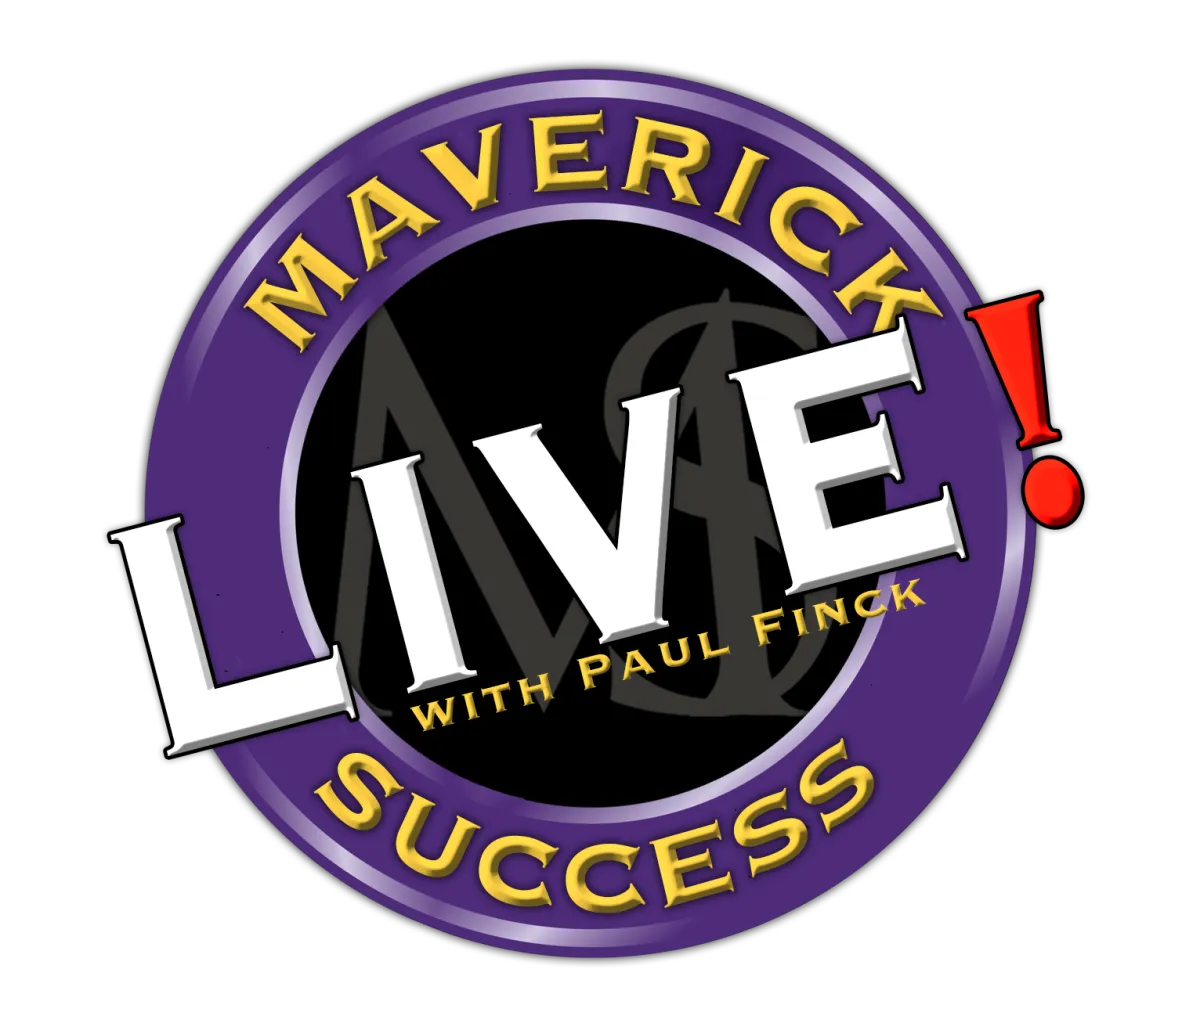 Maverick Success Live with Paul Finck